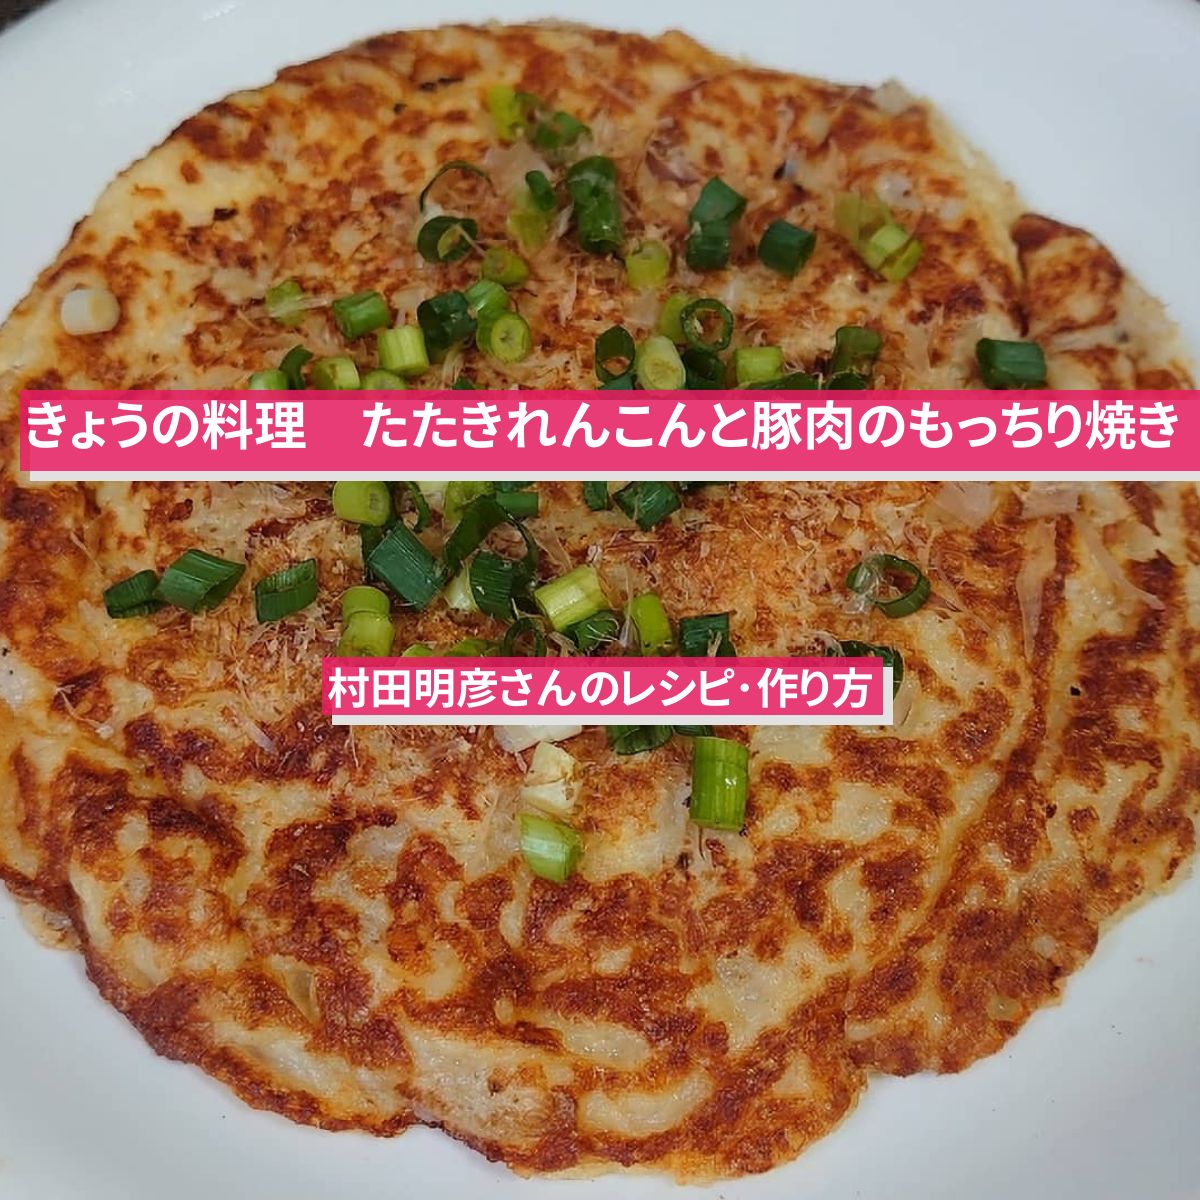 【きょうの料理】『たたきれんこんと豚肉のもっちり焼き』村田明彦さんのレシピ･作り方